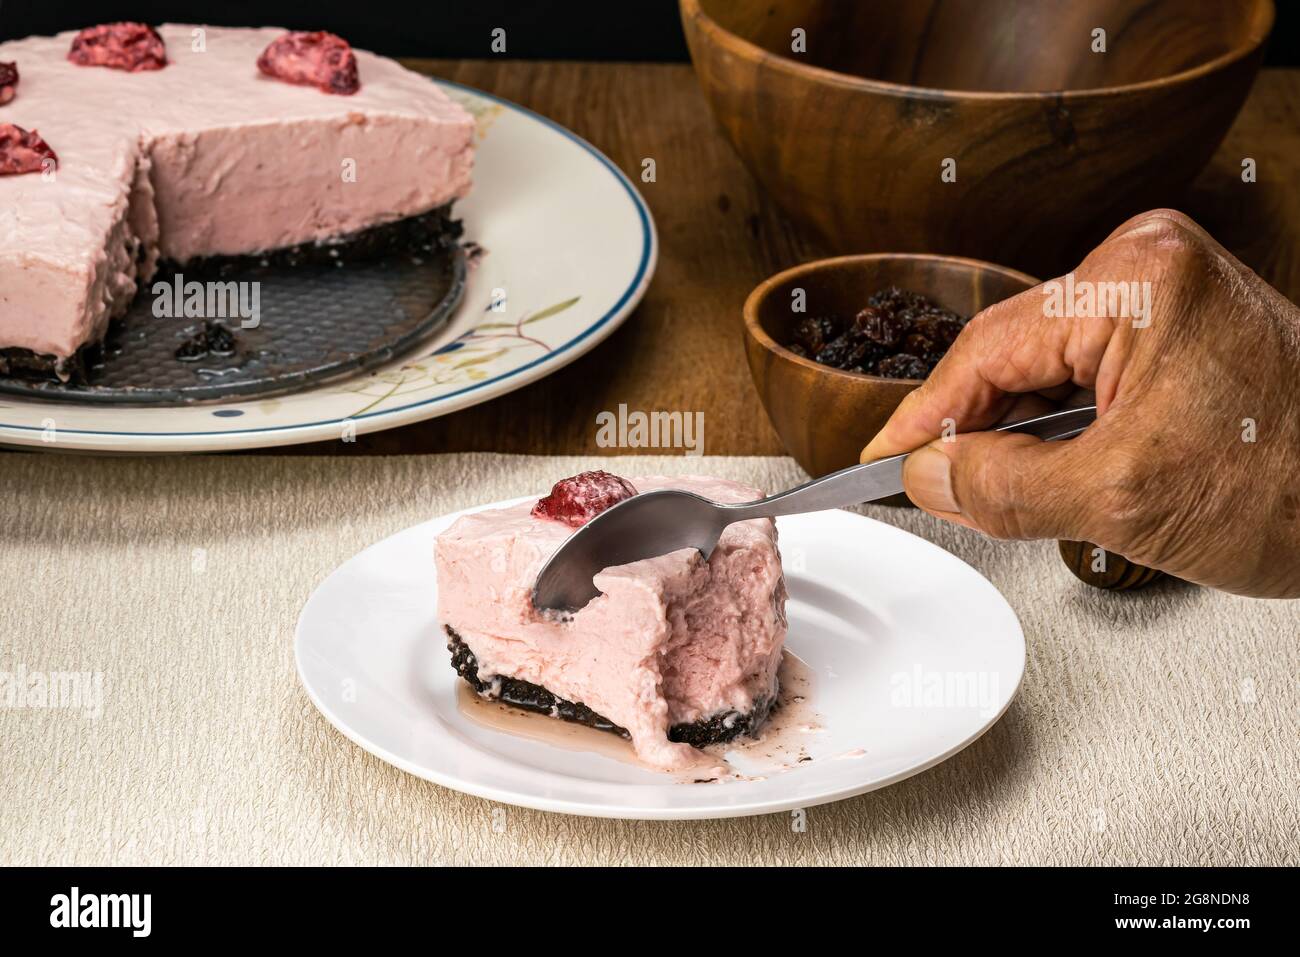 Senior Hand mit Metalllöffel schneiden köstliche gefrorene hausgemachte Erdbeere Käsekuchen in weißen Keramikschale auf Tischmatte mit getrockneten Rosinen in Holzbecher, Stockfoto